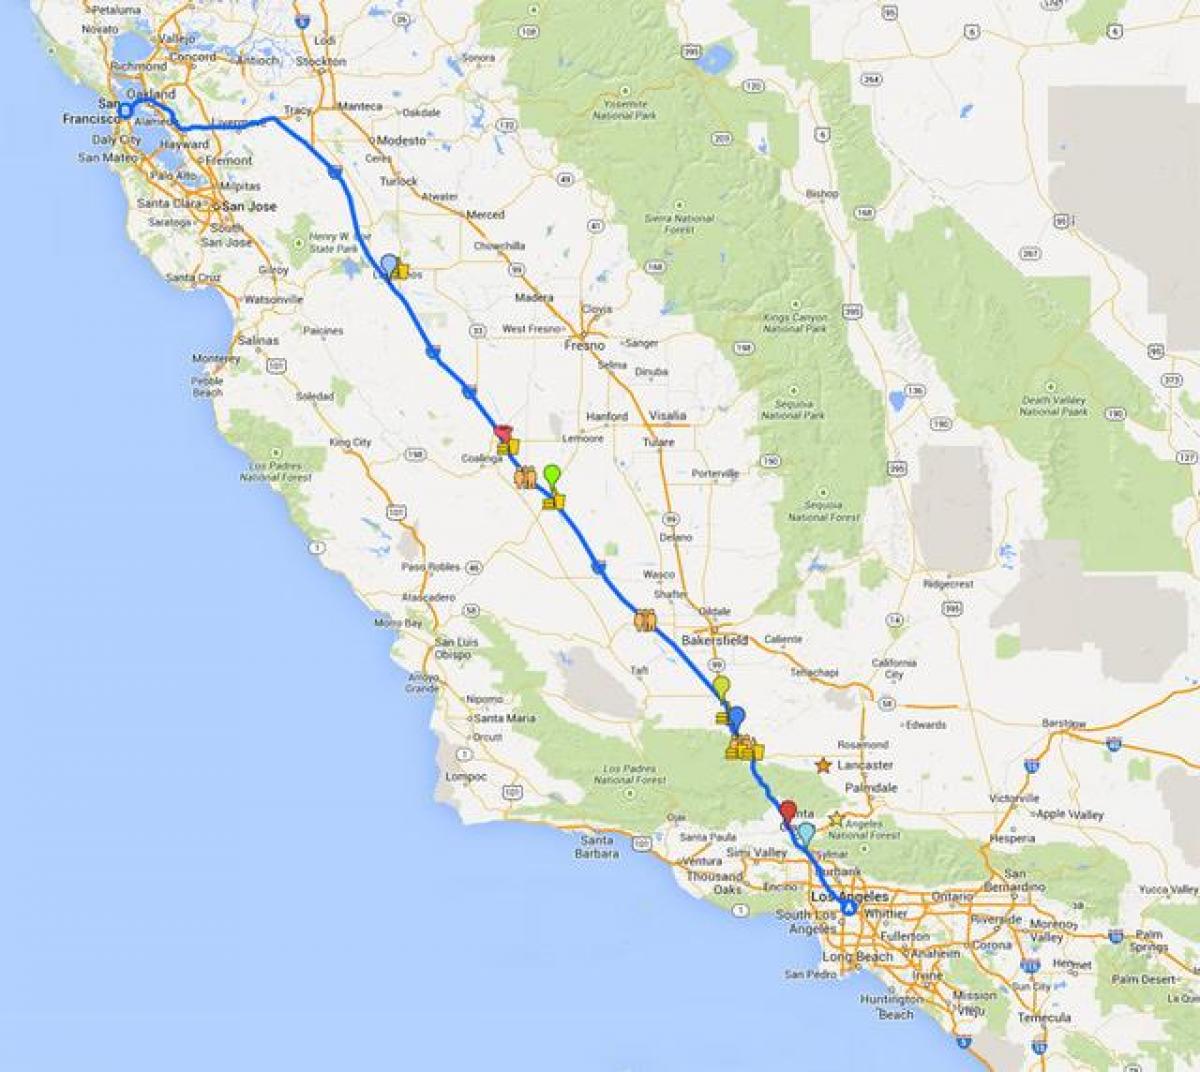 Карта на Сан Франциско возење турнеја